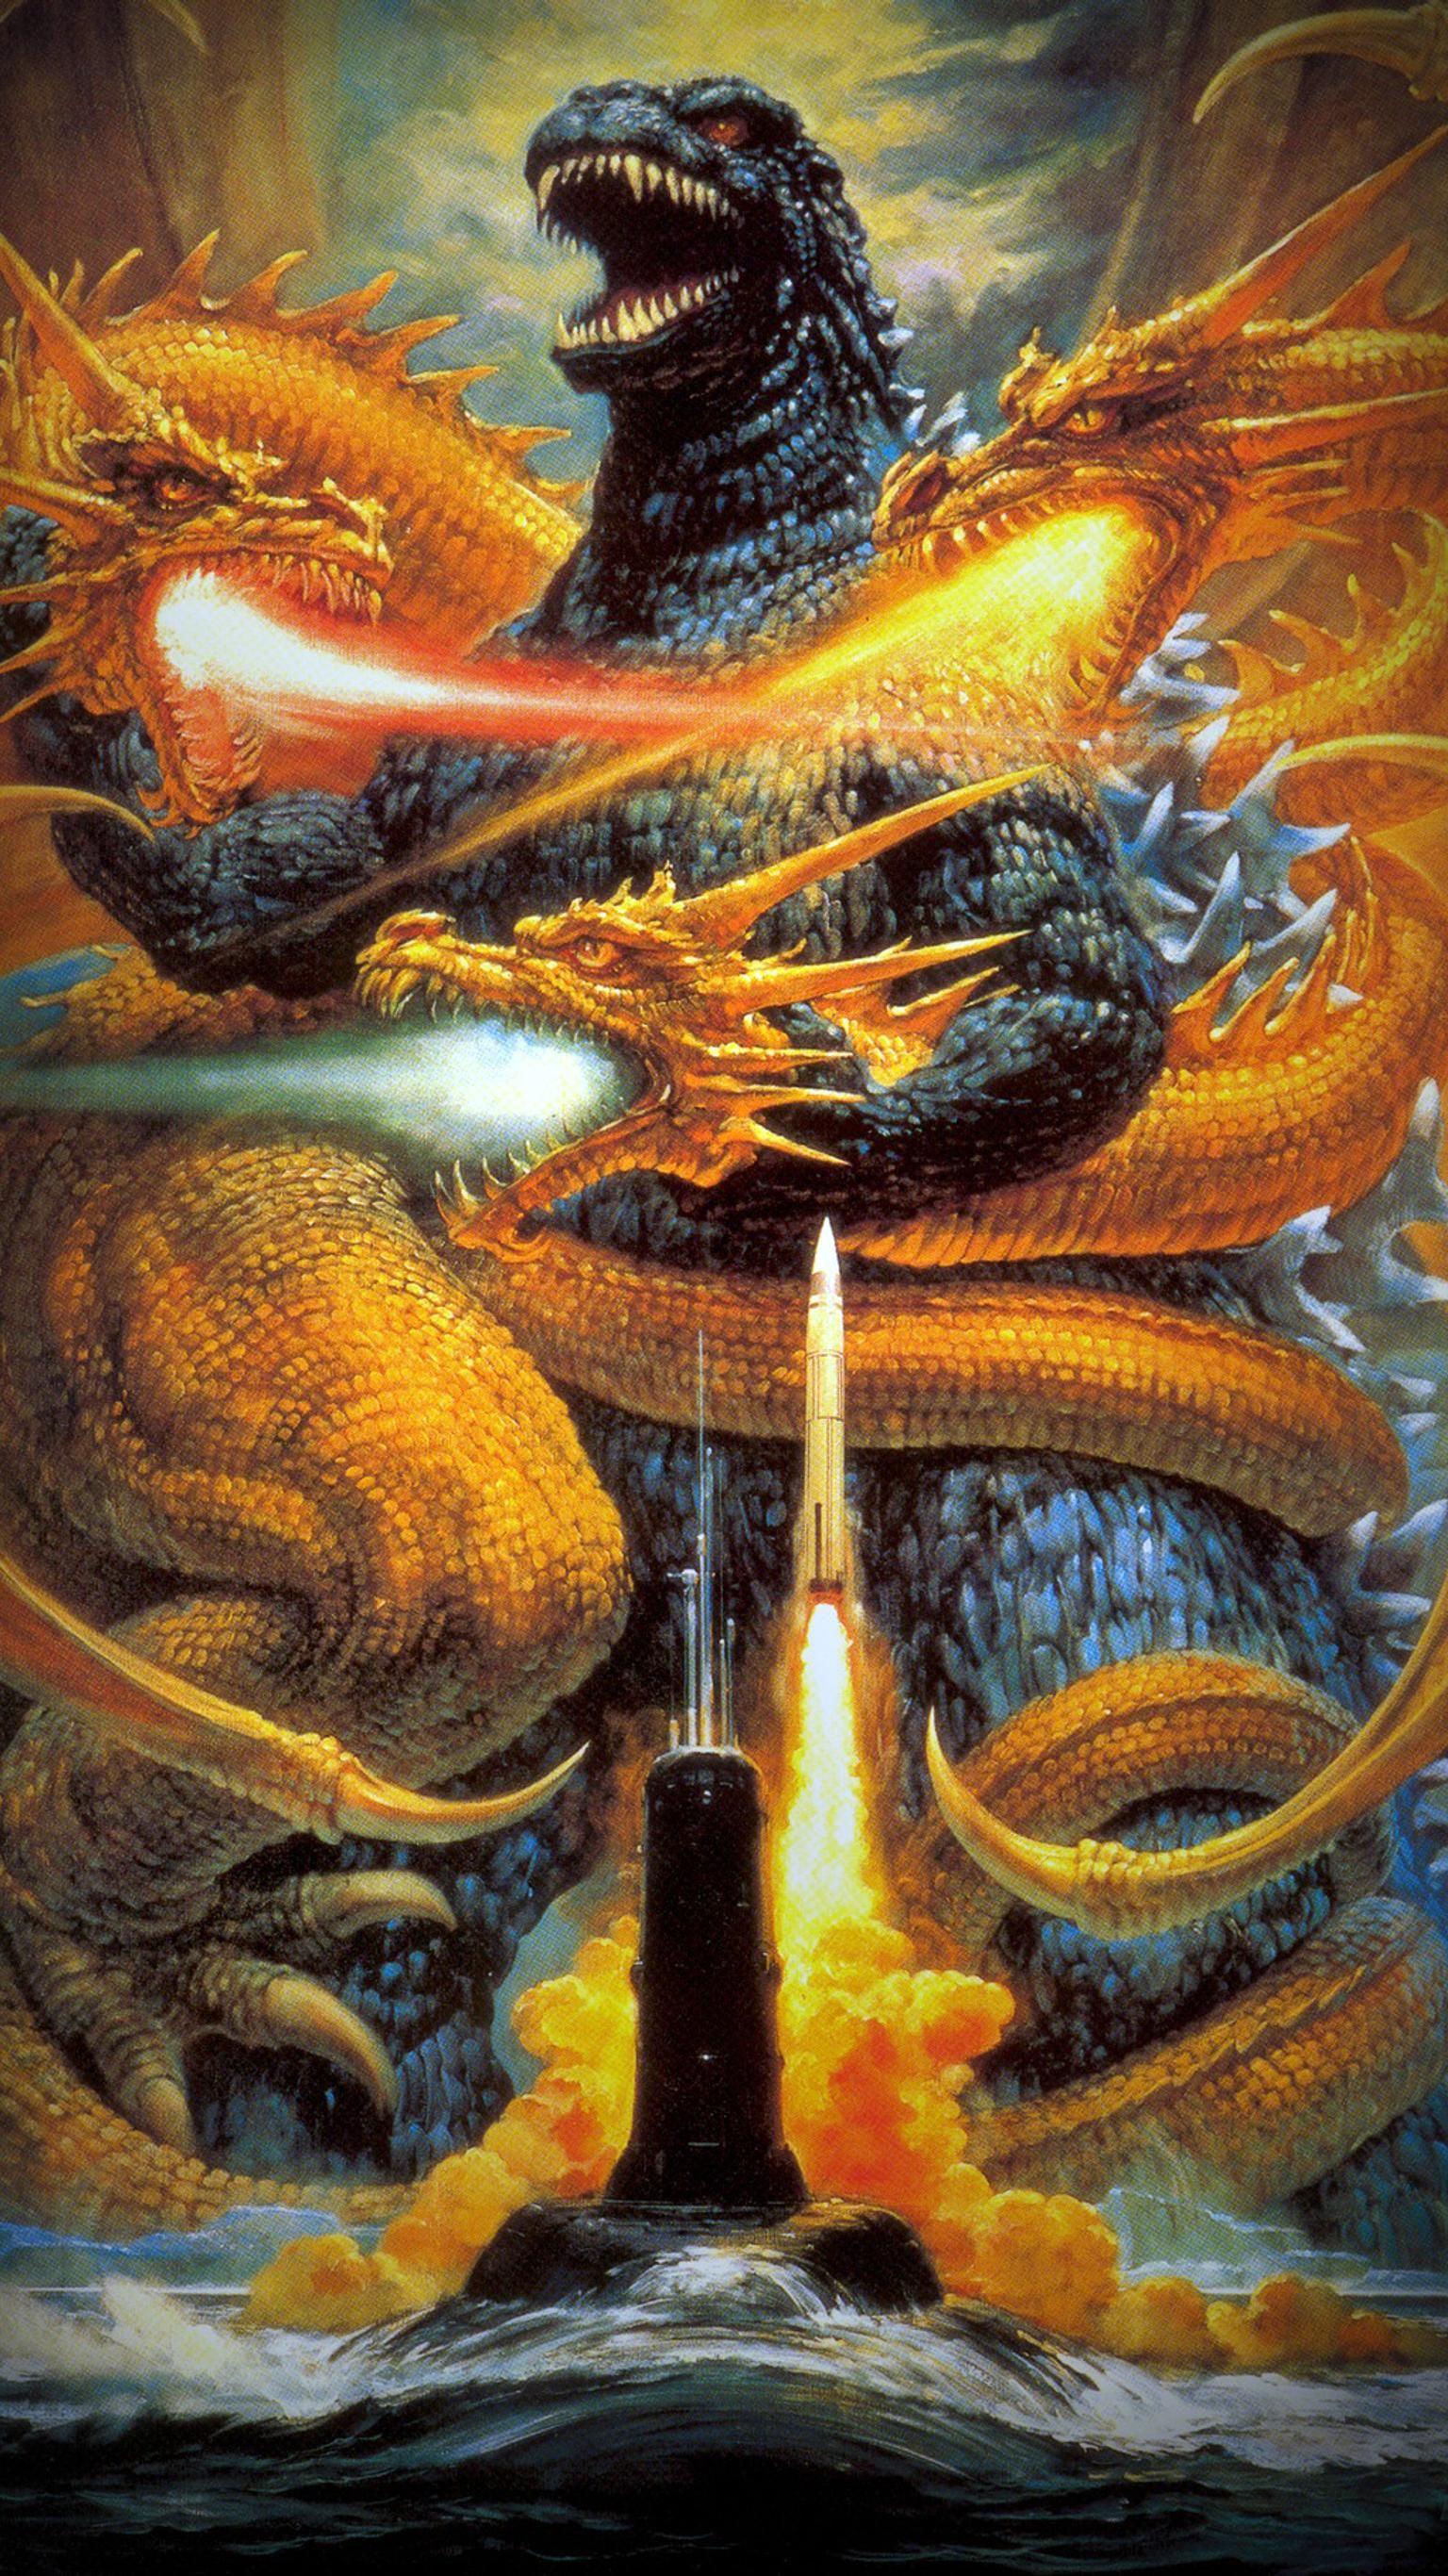 Godzilla vs. King Ghidorah (1991) Phone Wallpaper. Phone Wallpaper